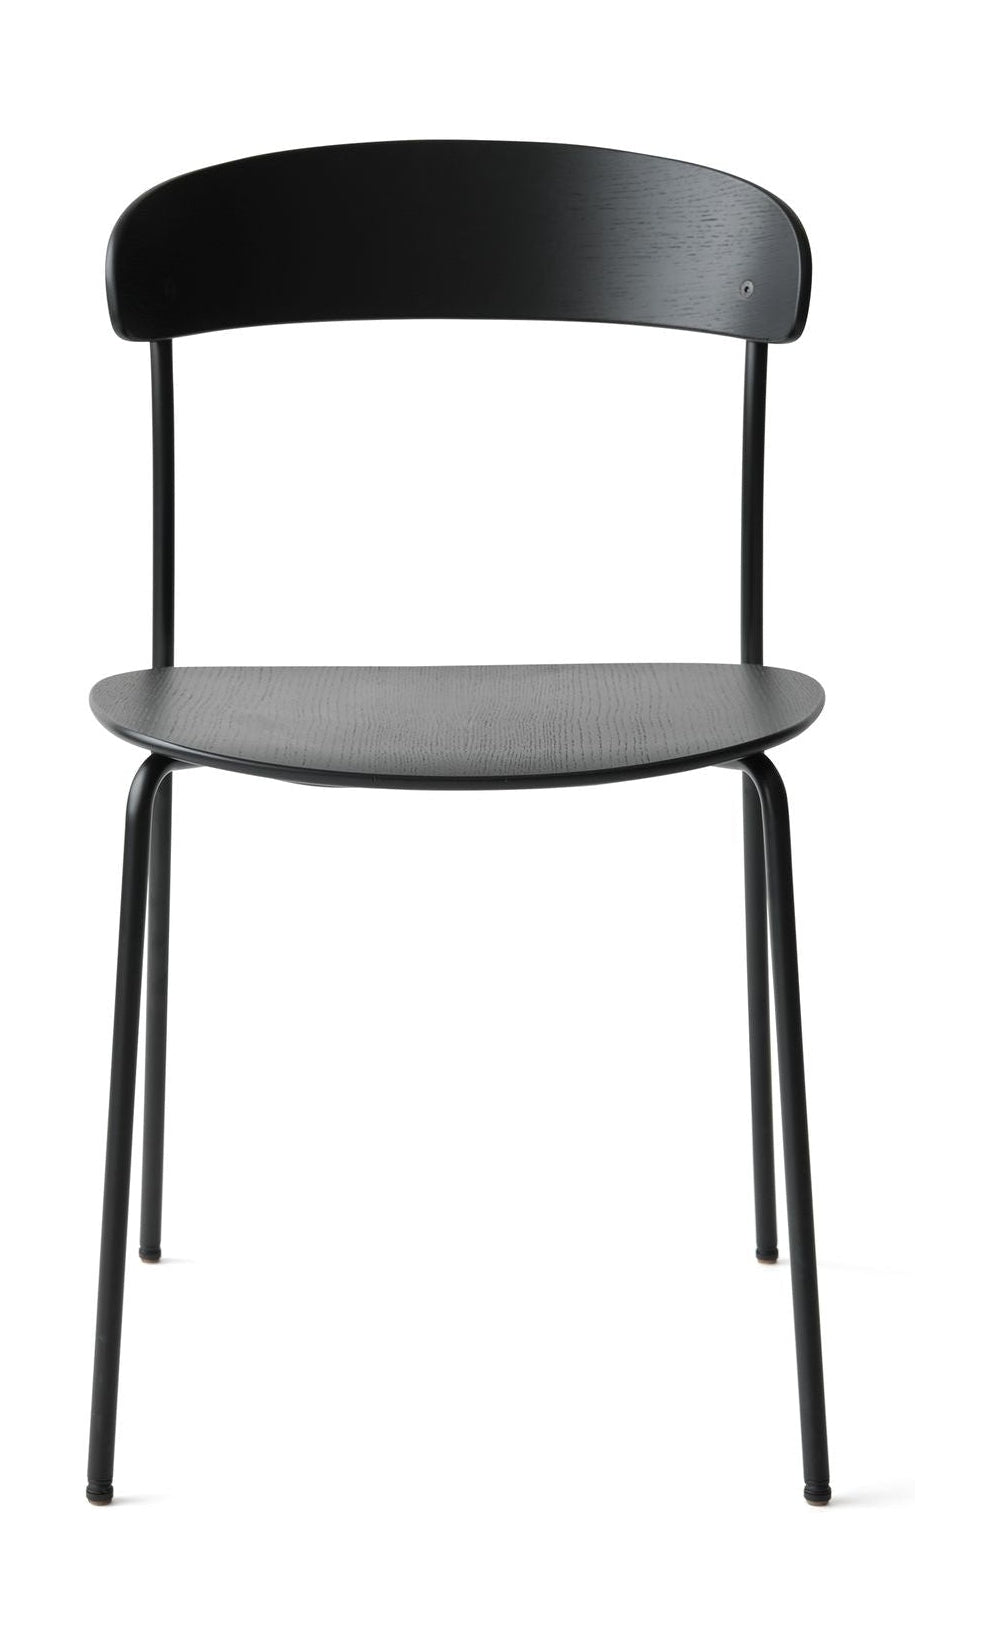 Nowe prace brakujące krzesło, czarne